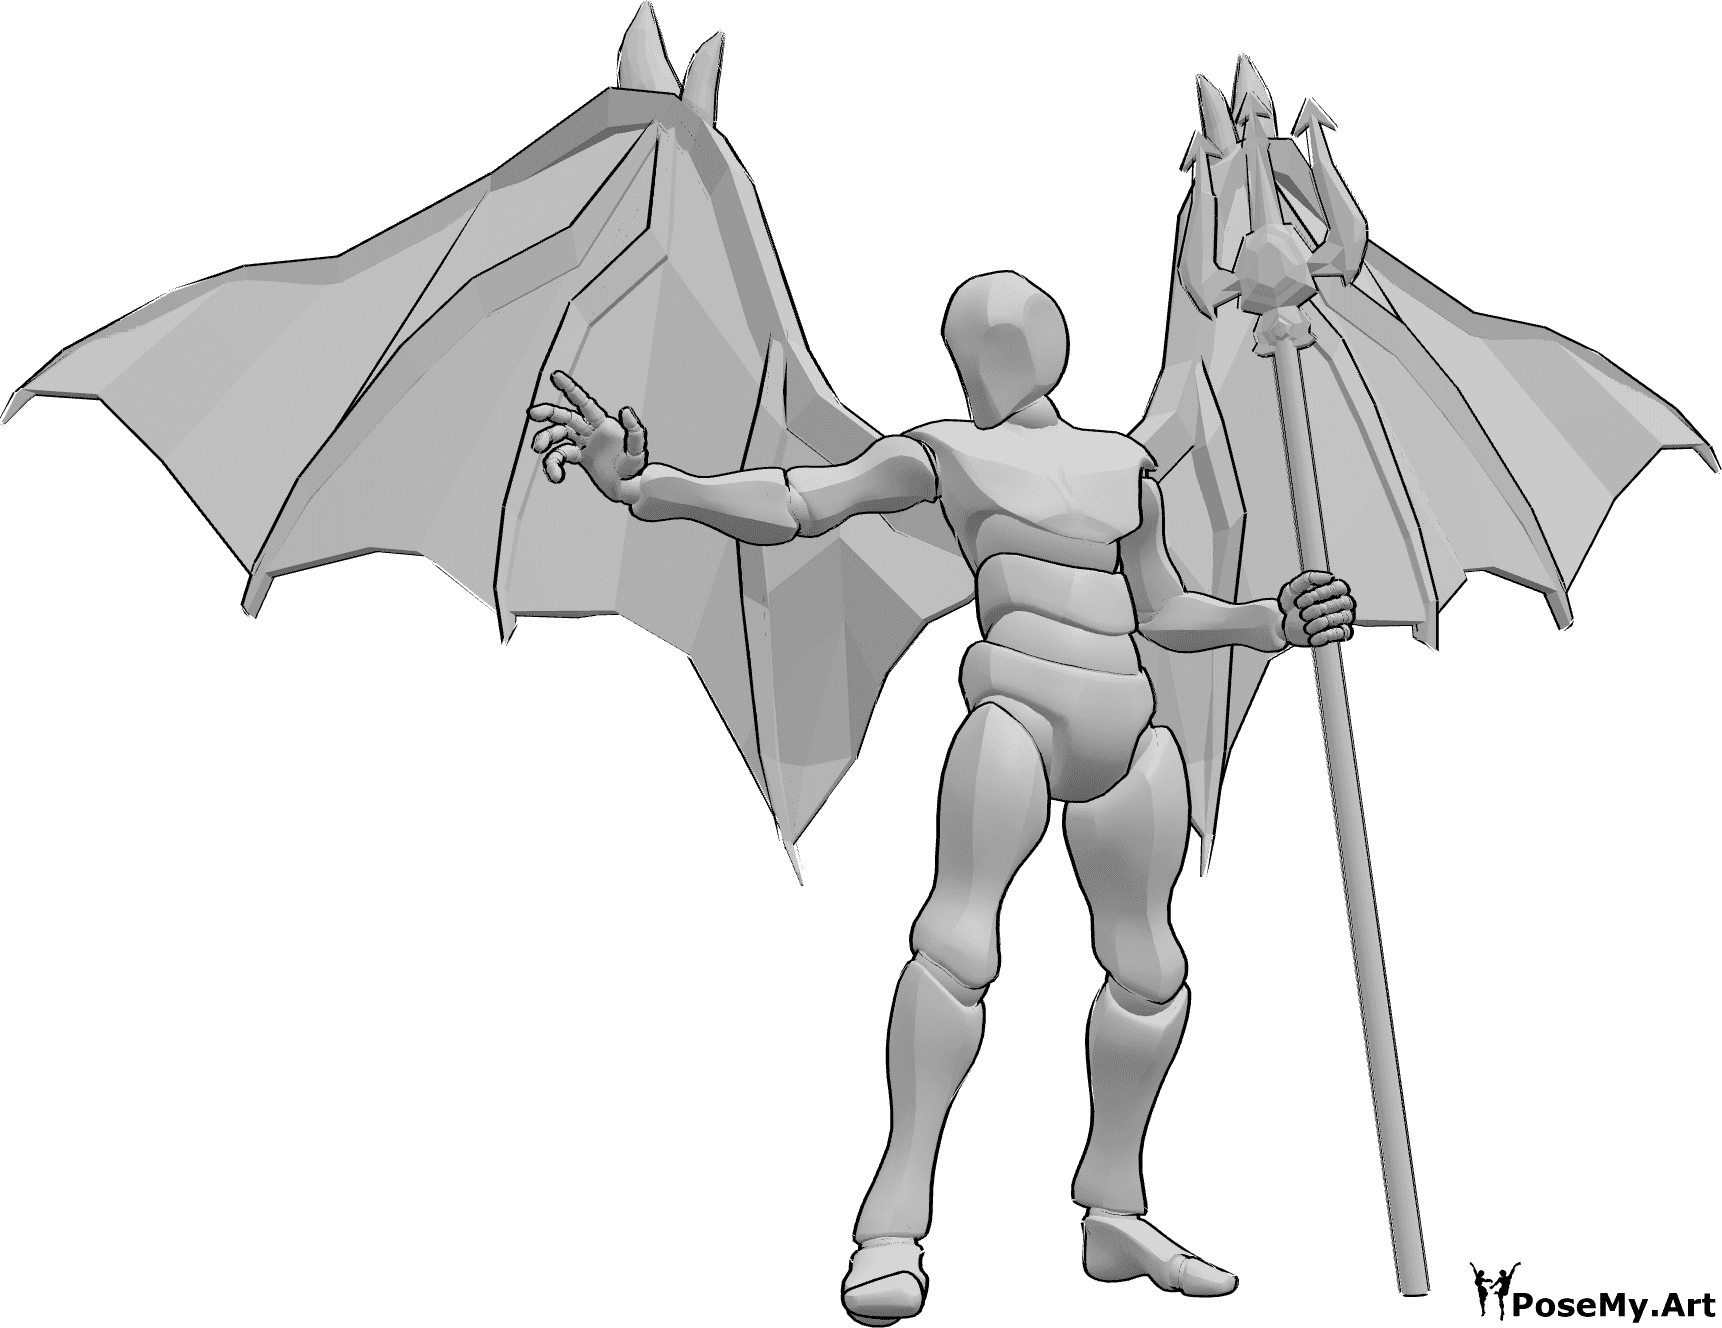 Référence des poses- Pose de lanceur de sorts démoniaque - Homme debout avec des ailes de diable, tenant un trident dans sa main gauche et jetant un sort de sa main droite